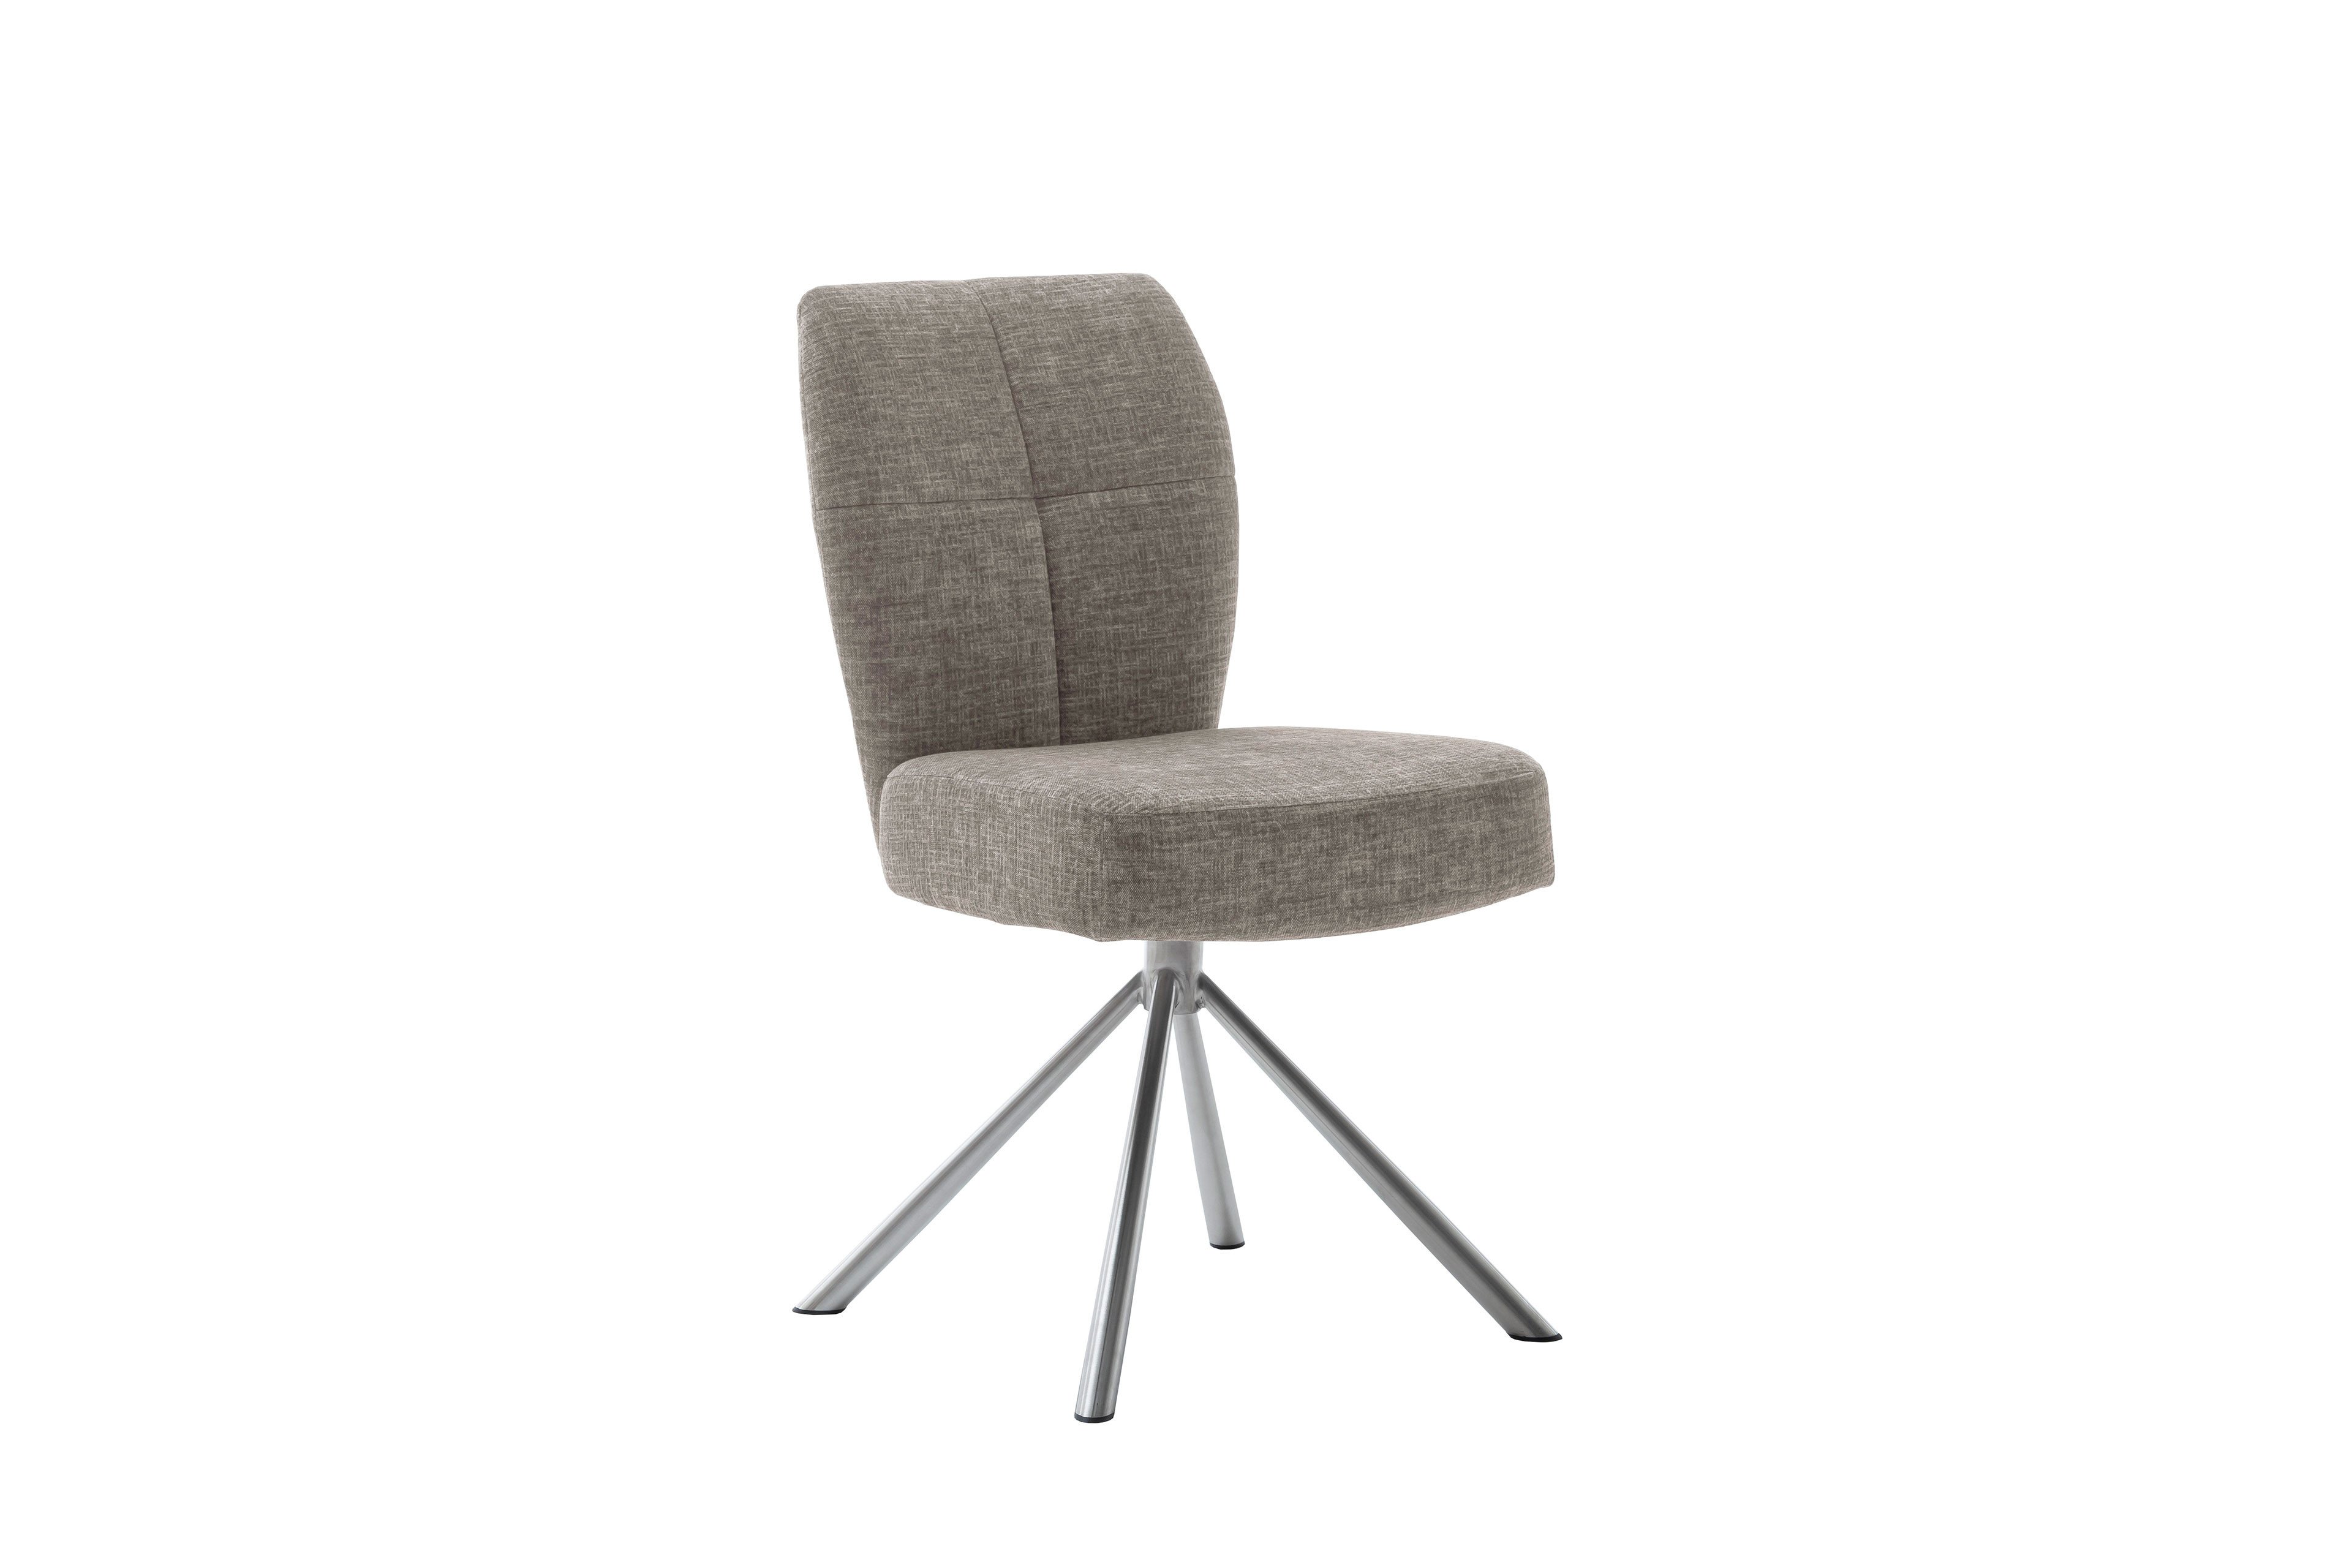 Stuhl Kea von MCA cappuccino | Online-Shop Möbel furniture Letz Ihr 